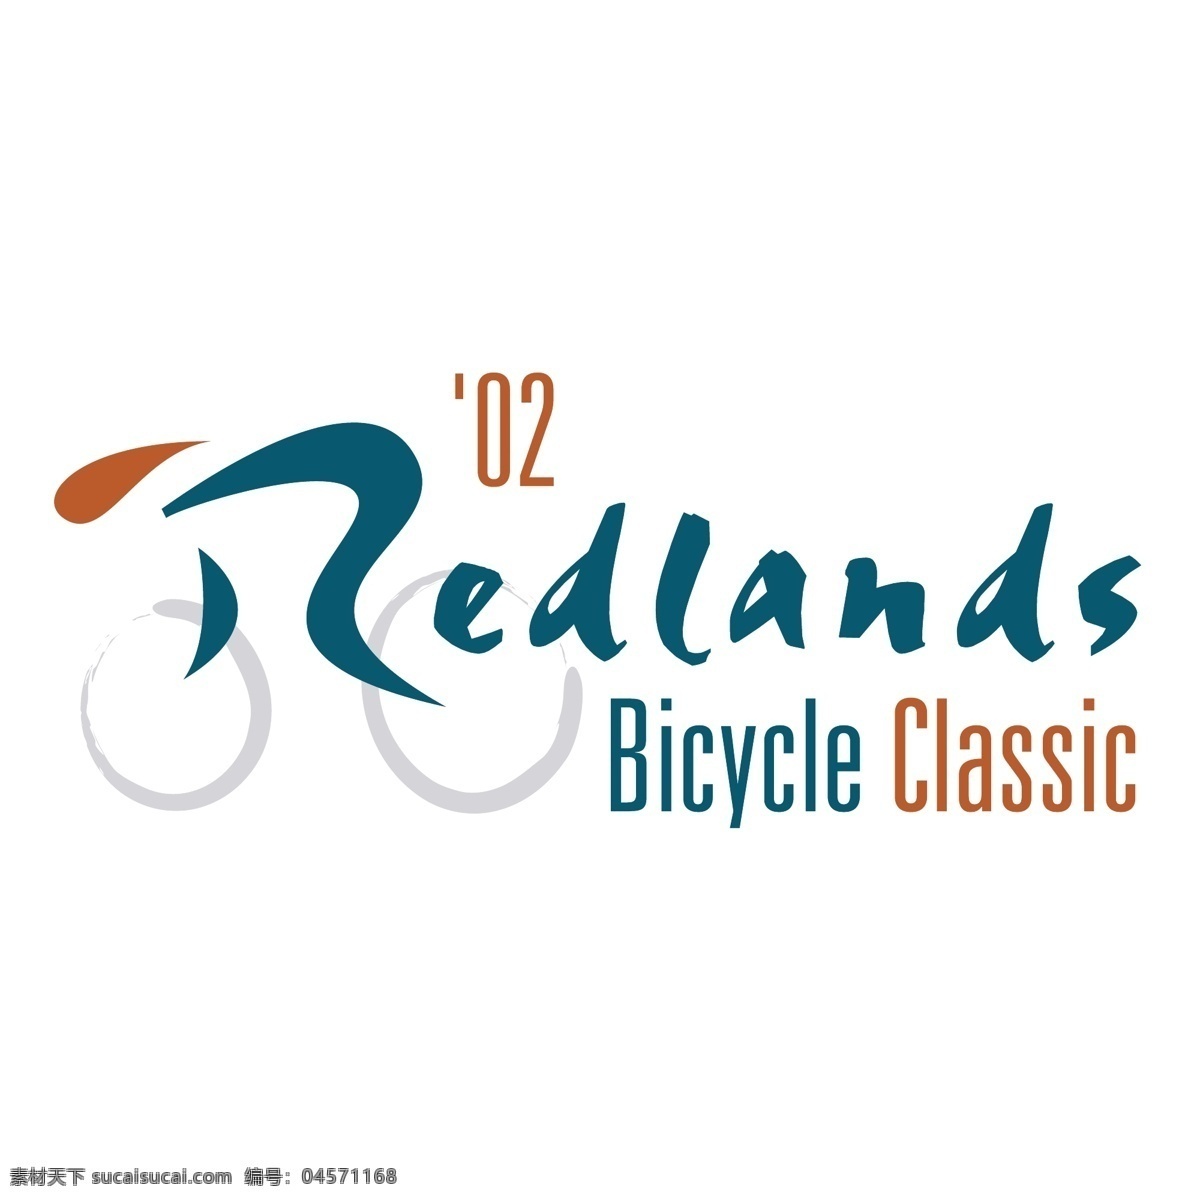 雷德 兰 自行车 经典 雷德兰 雷德兰自行车 自行车的经典 矢量 经典的矢量 艺术 载体 经典的自行车 矢量图 建筑家居